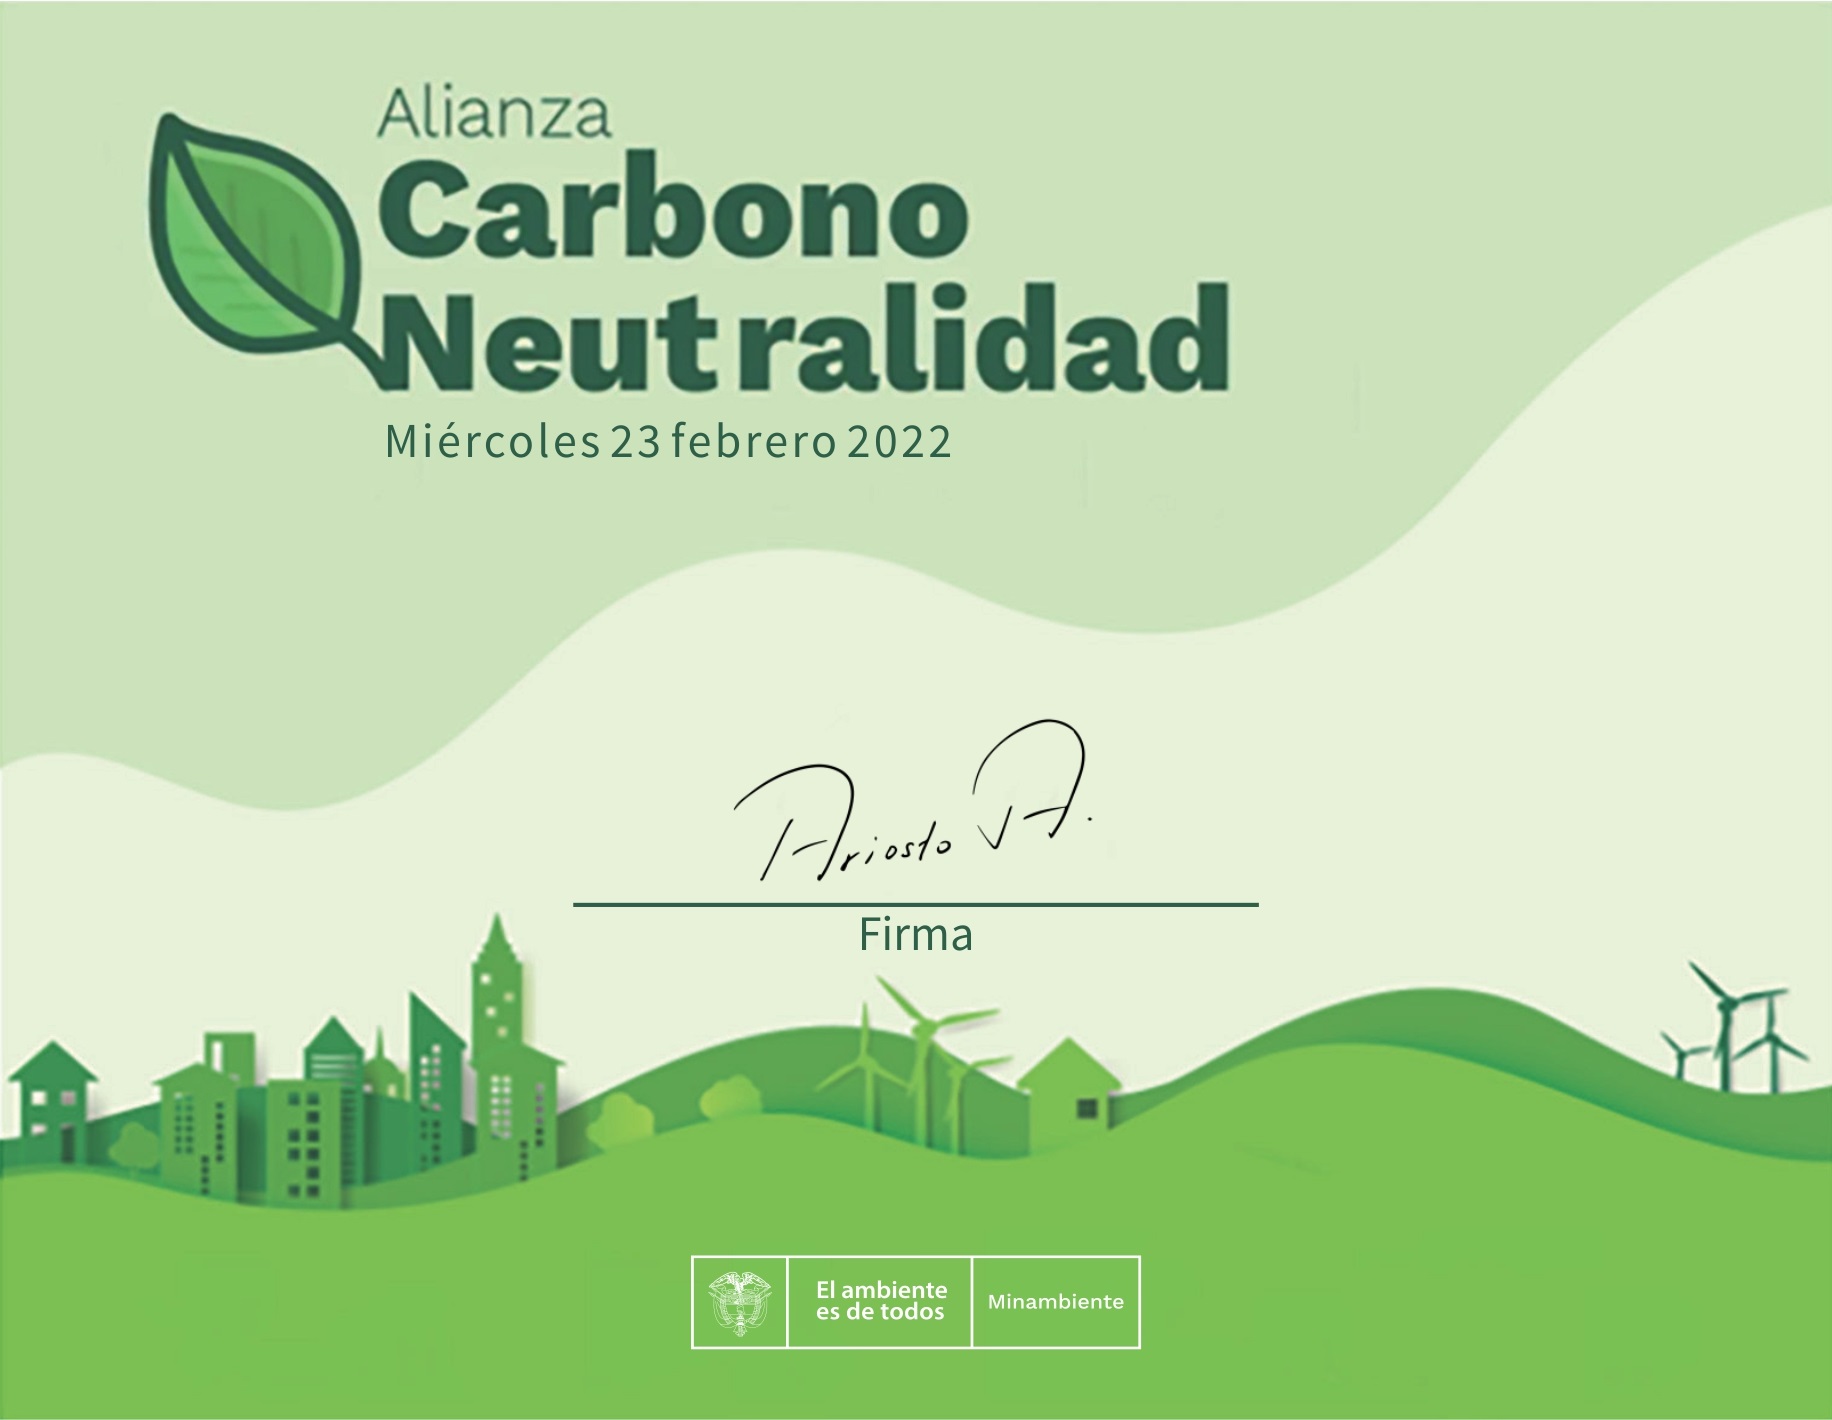 Alianza Carbono Neutralidad